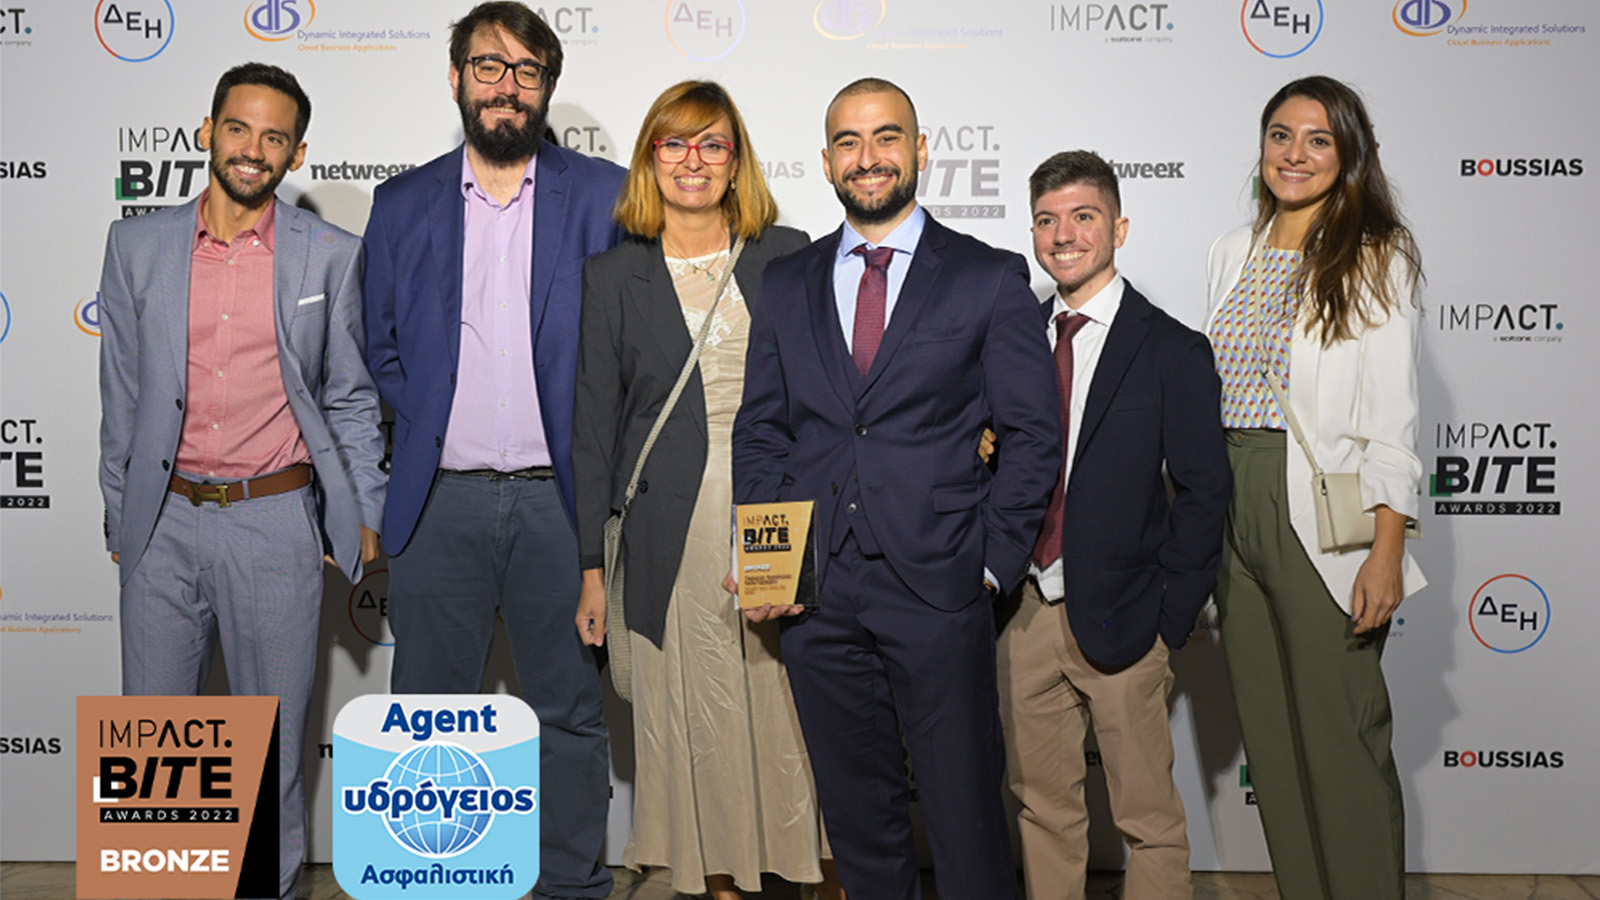 Υδρόγειος Ασφαλιστική: Bronze Award για το Ydrogios Agent App